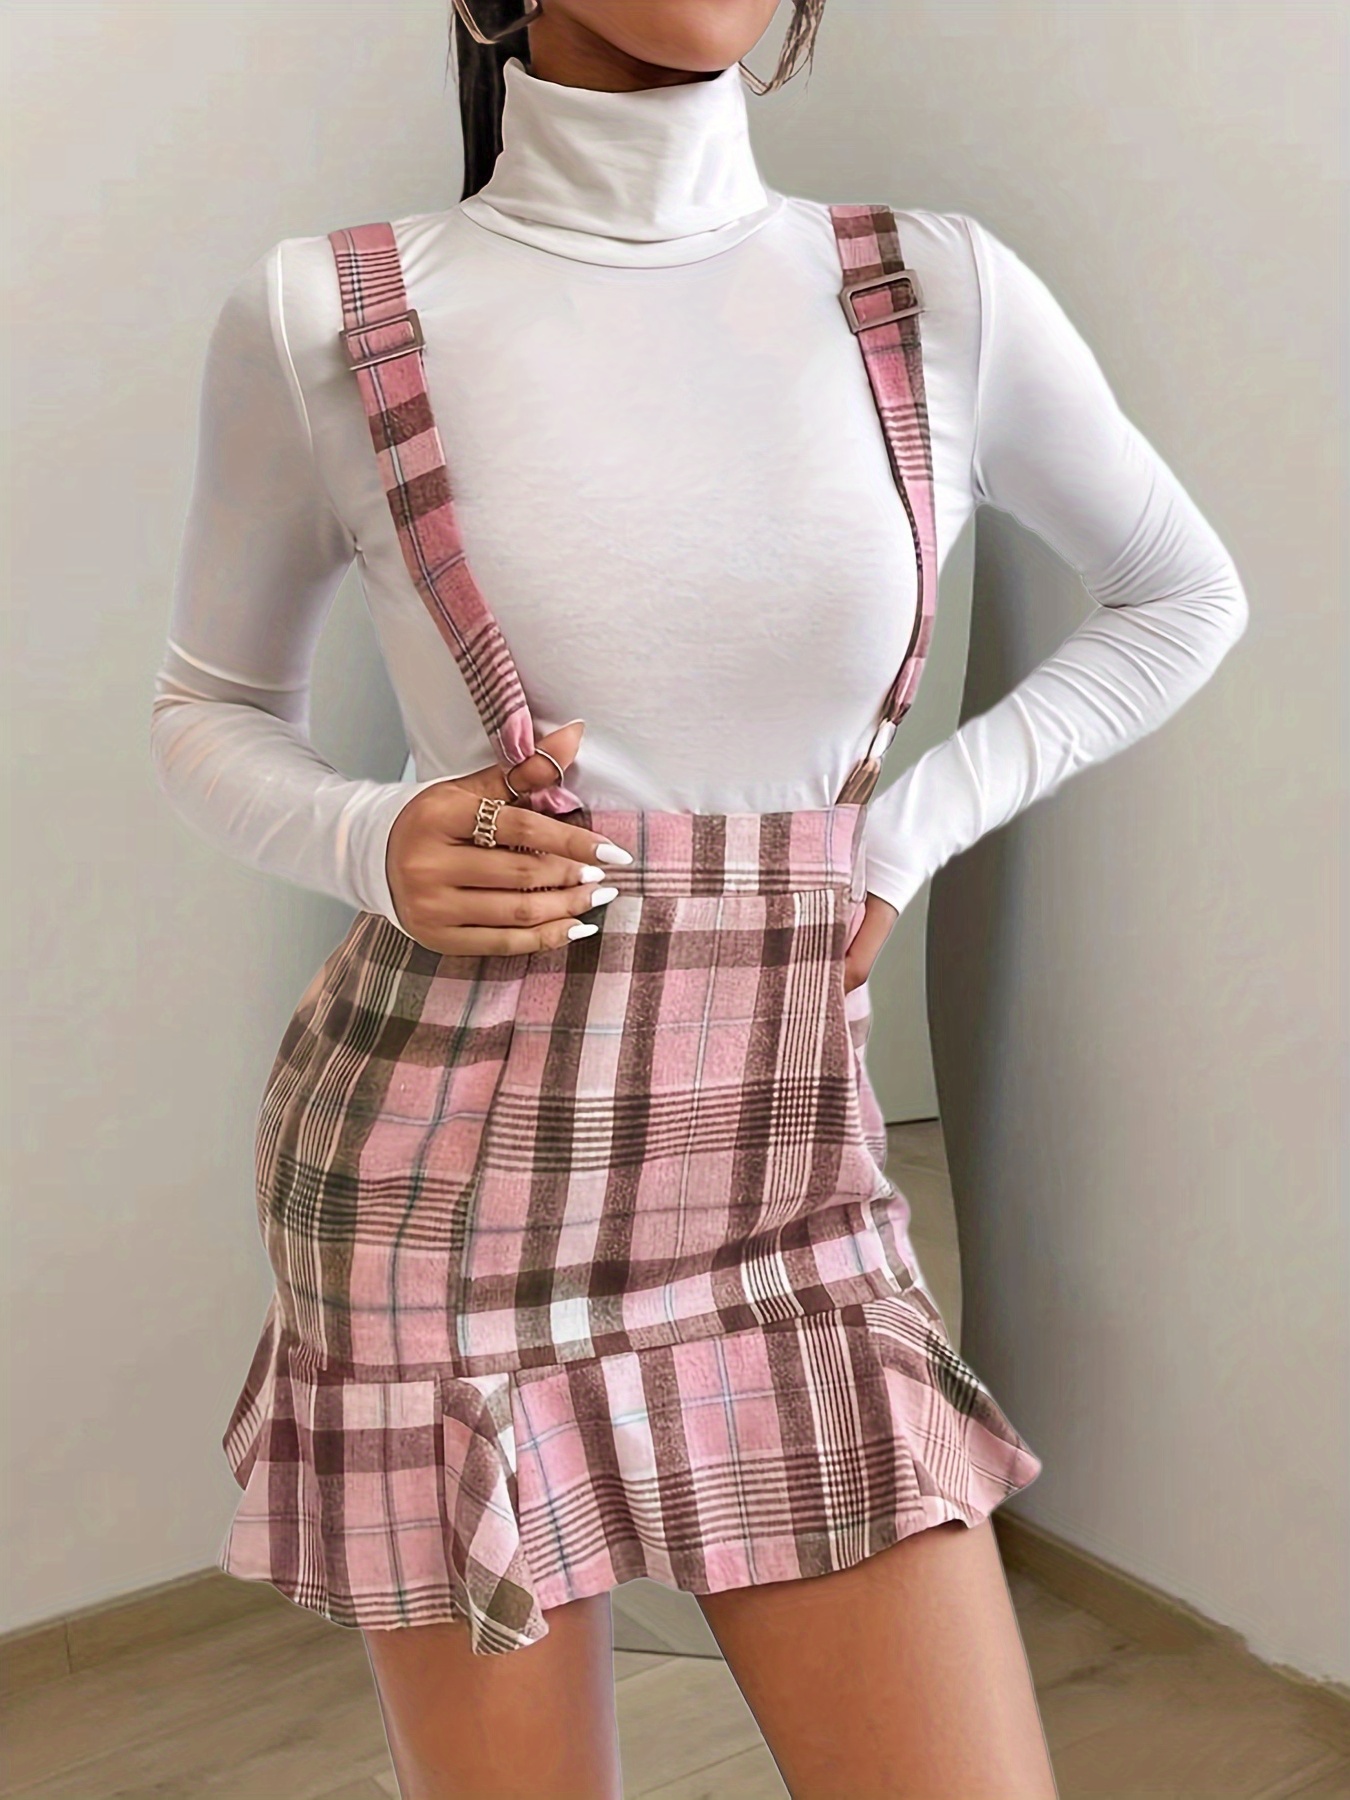 Jawbreaker - You Got Plaid Suspender - Skirt | IMPERICON US